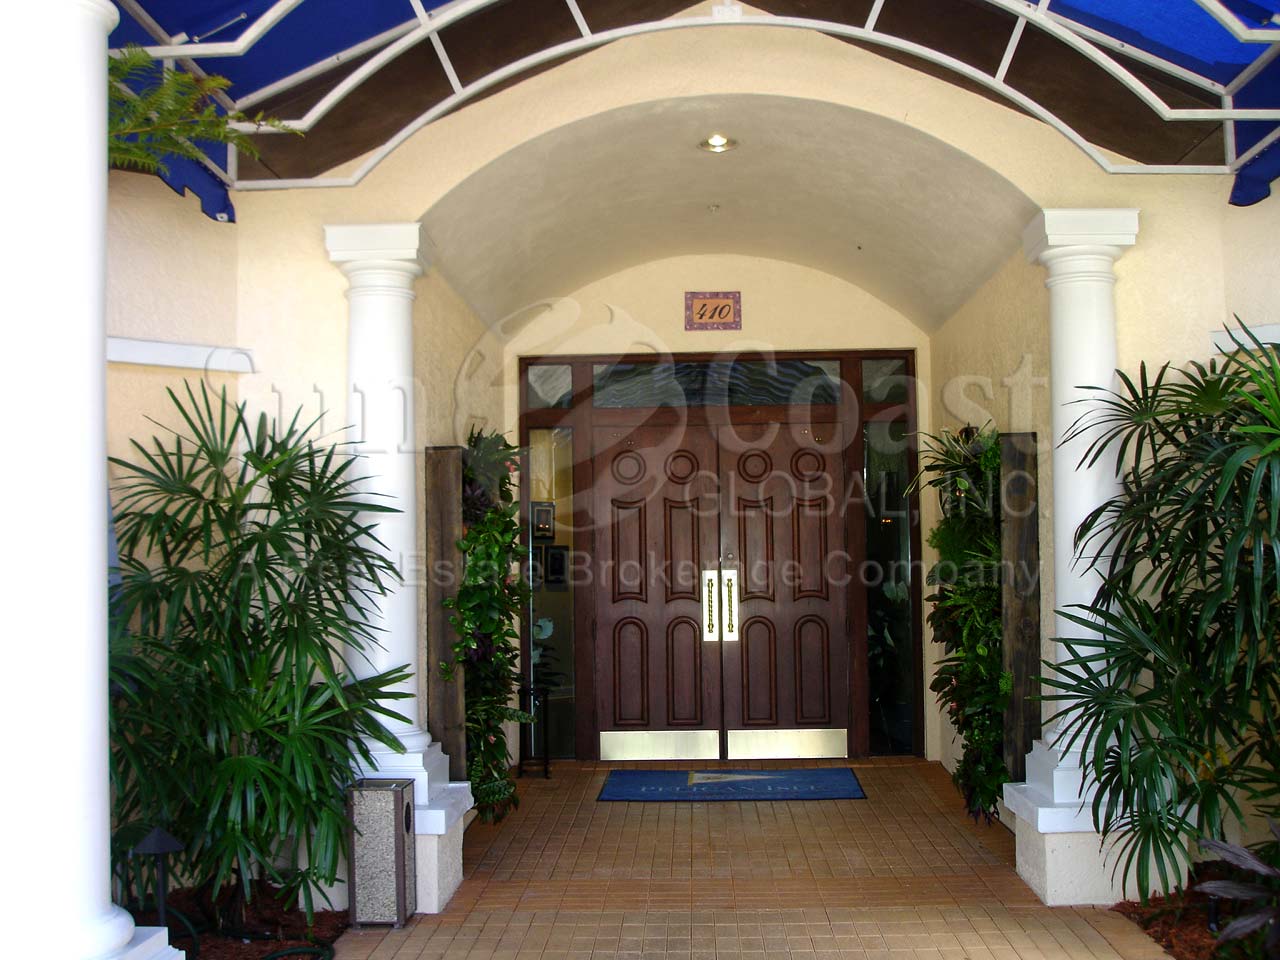 PELICAN ISLE Yacht Club Entrance 